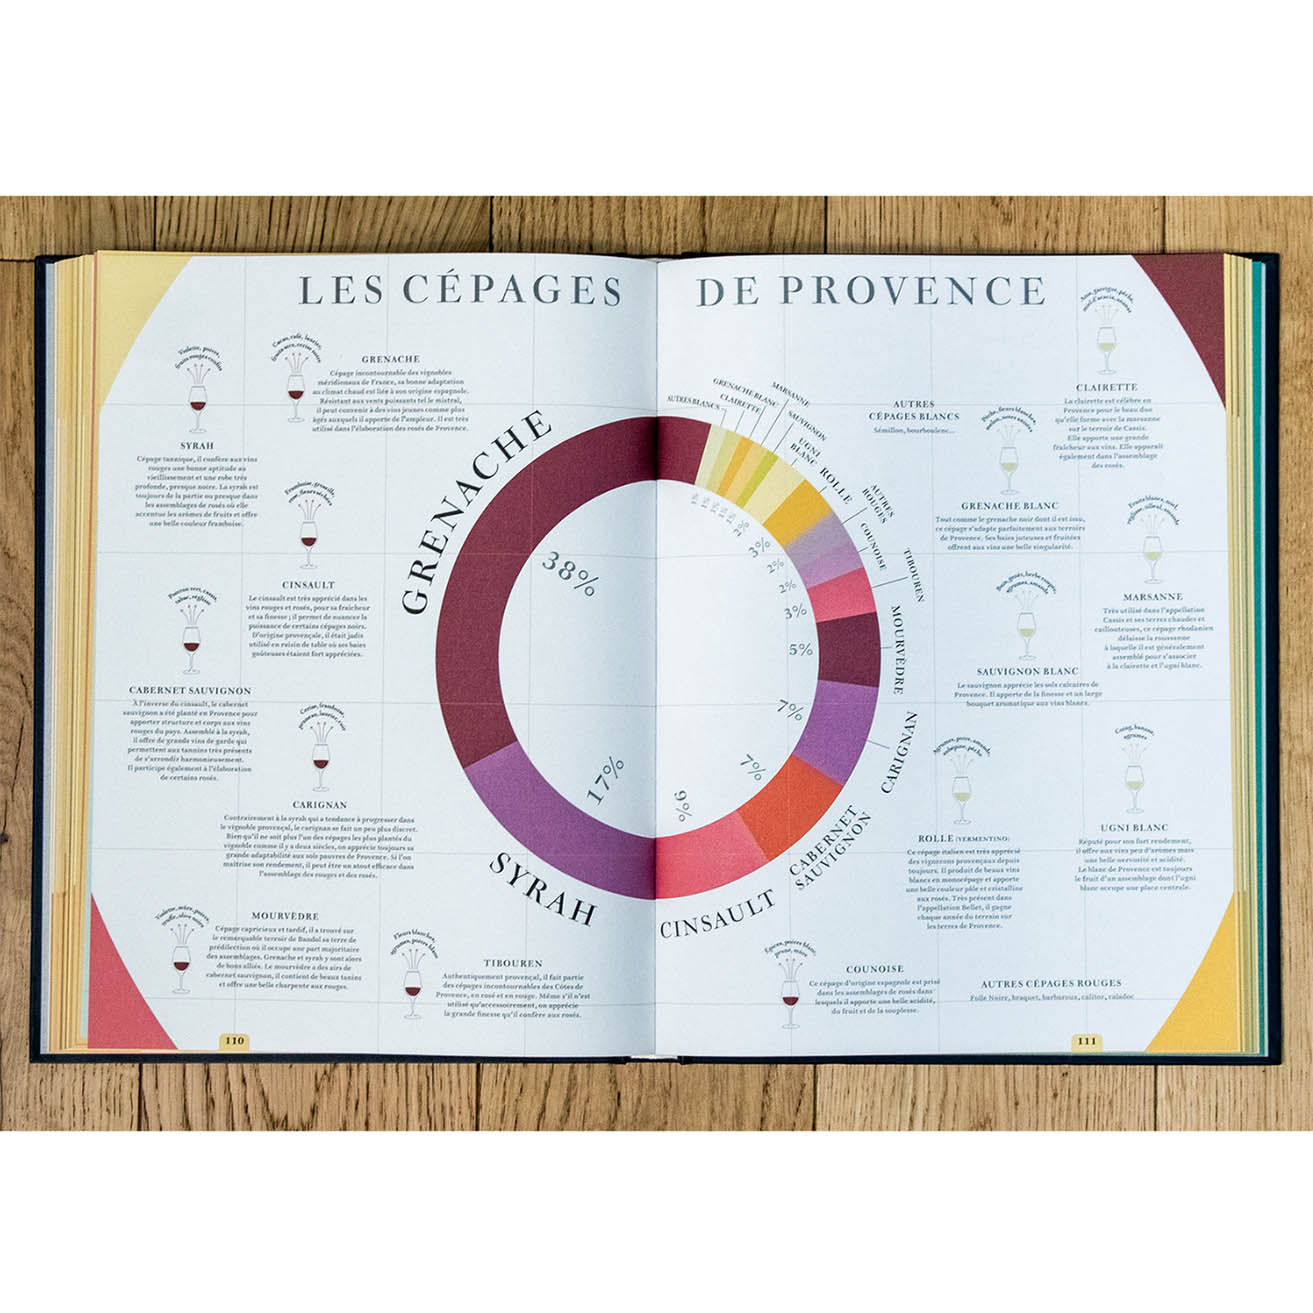 BOOK - La Route des Vins de France (French Wine Routes)